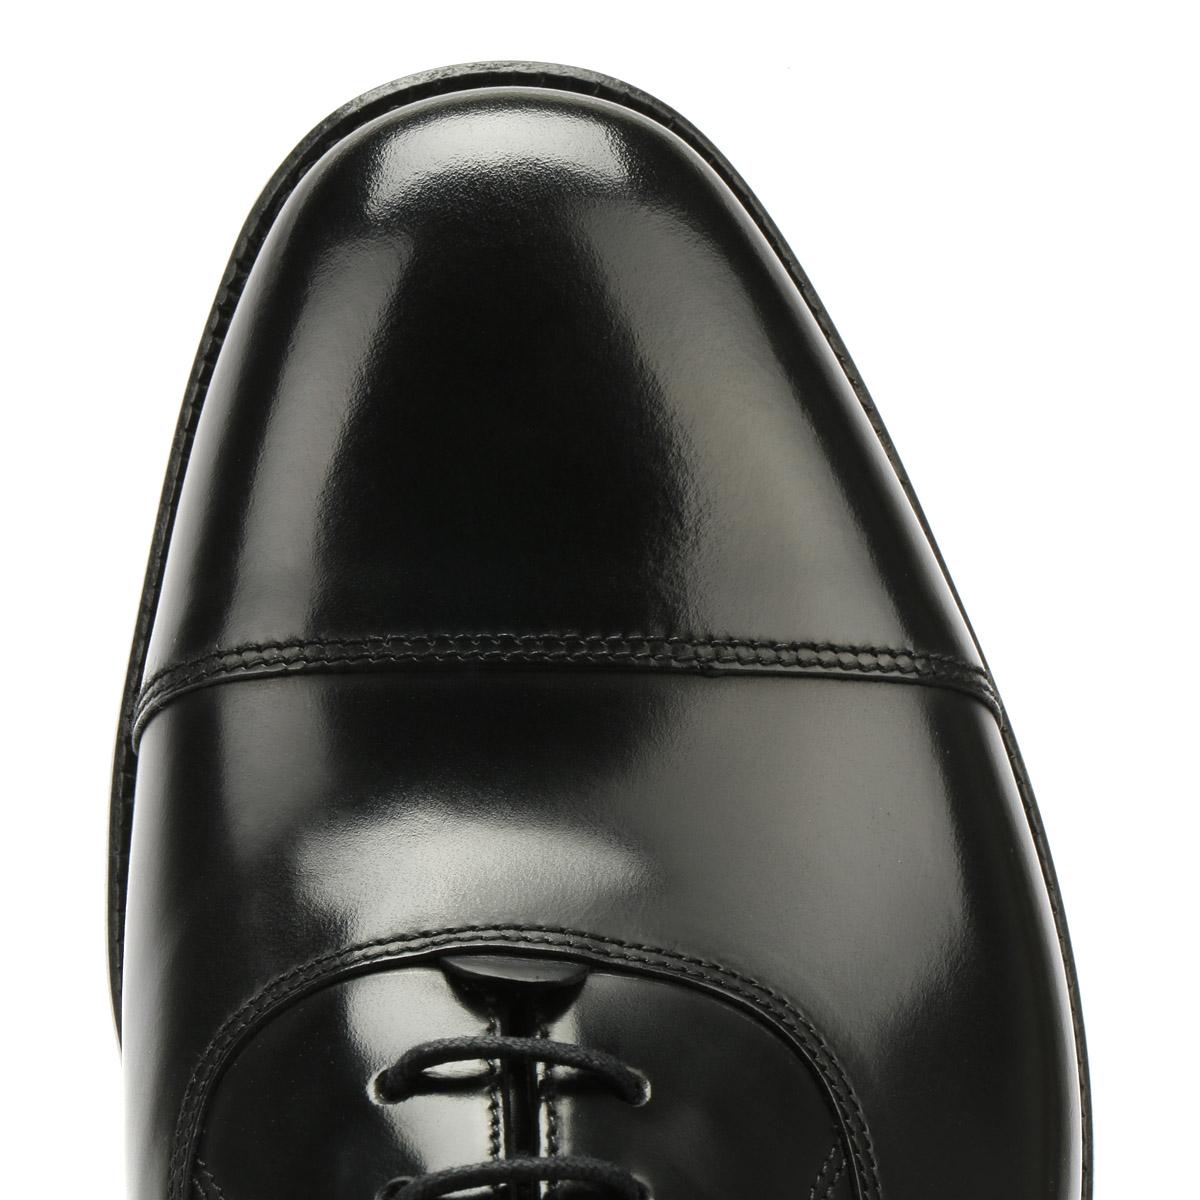 loake 200b polished leather black dress shoes